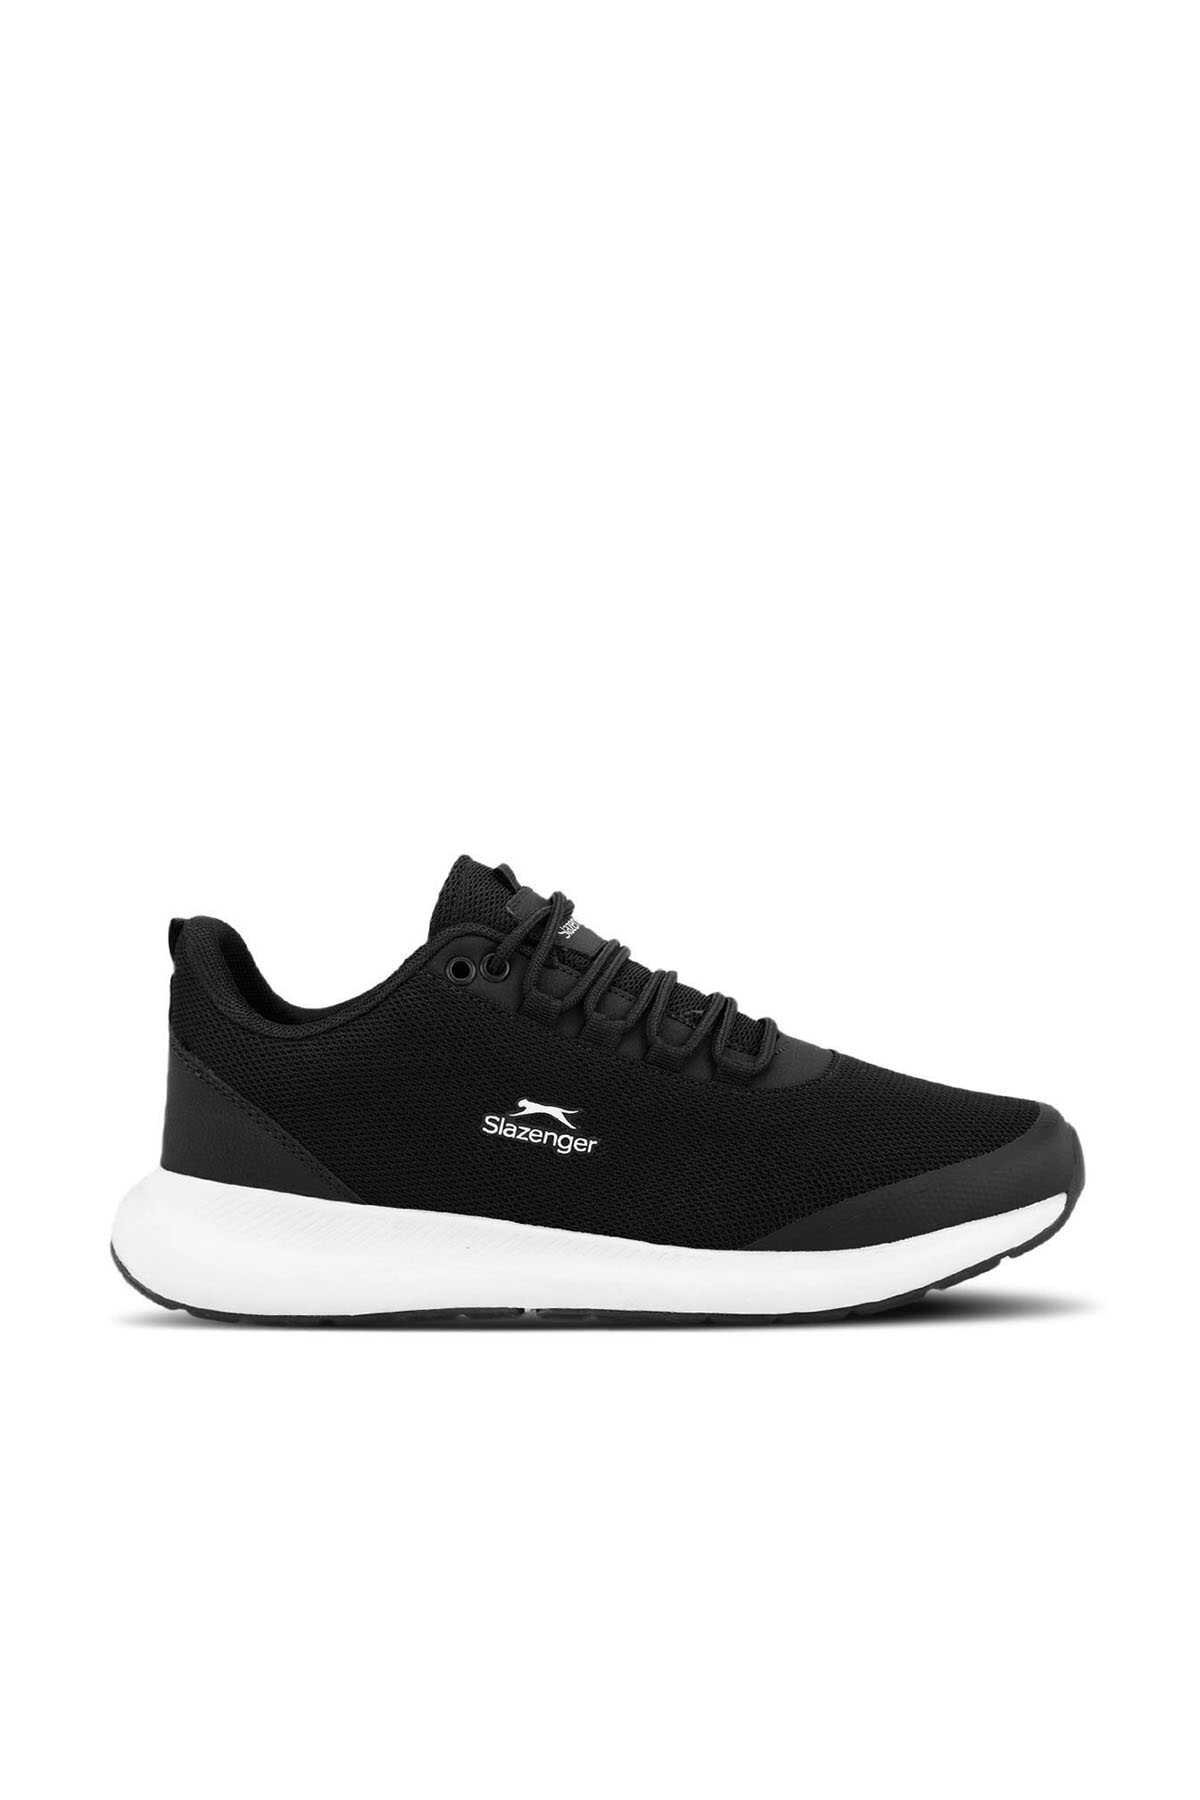 Slazenger - Slazenger ZITA Kadın Sneaker Ayakkabı Siyah / Beyaz